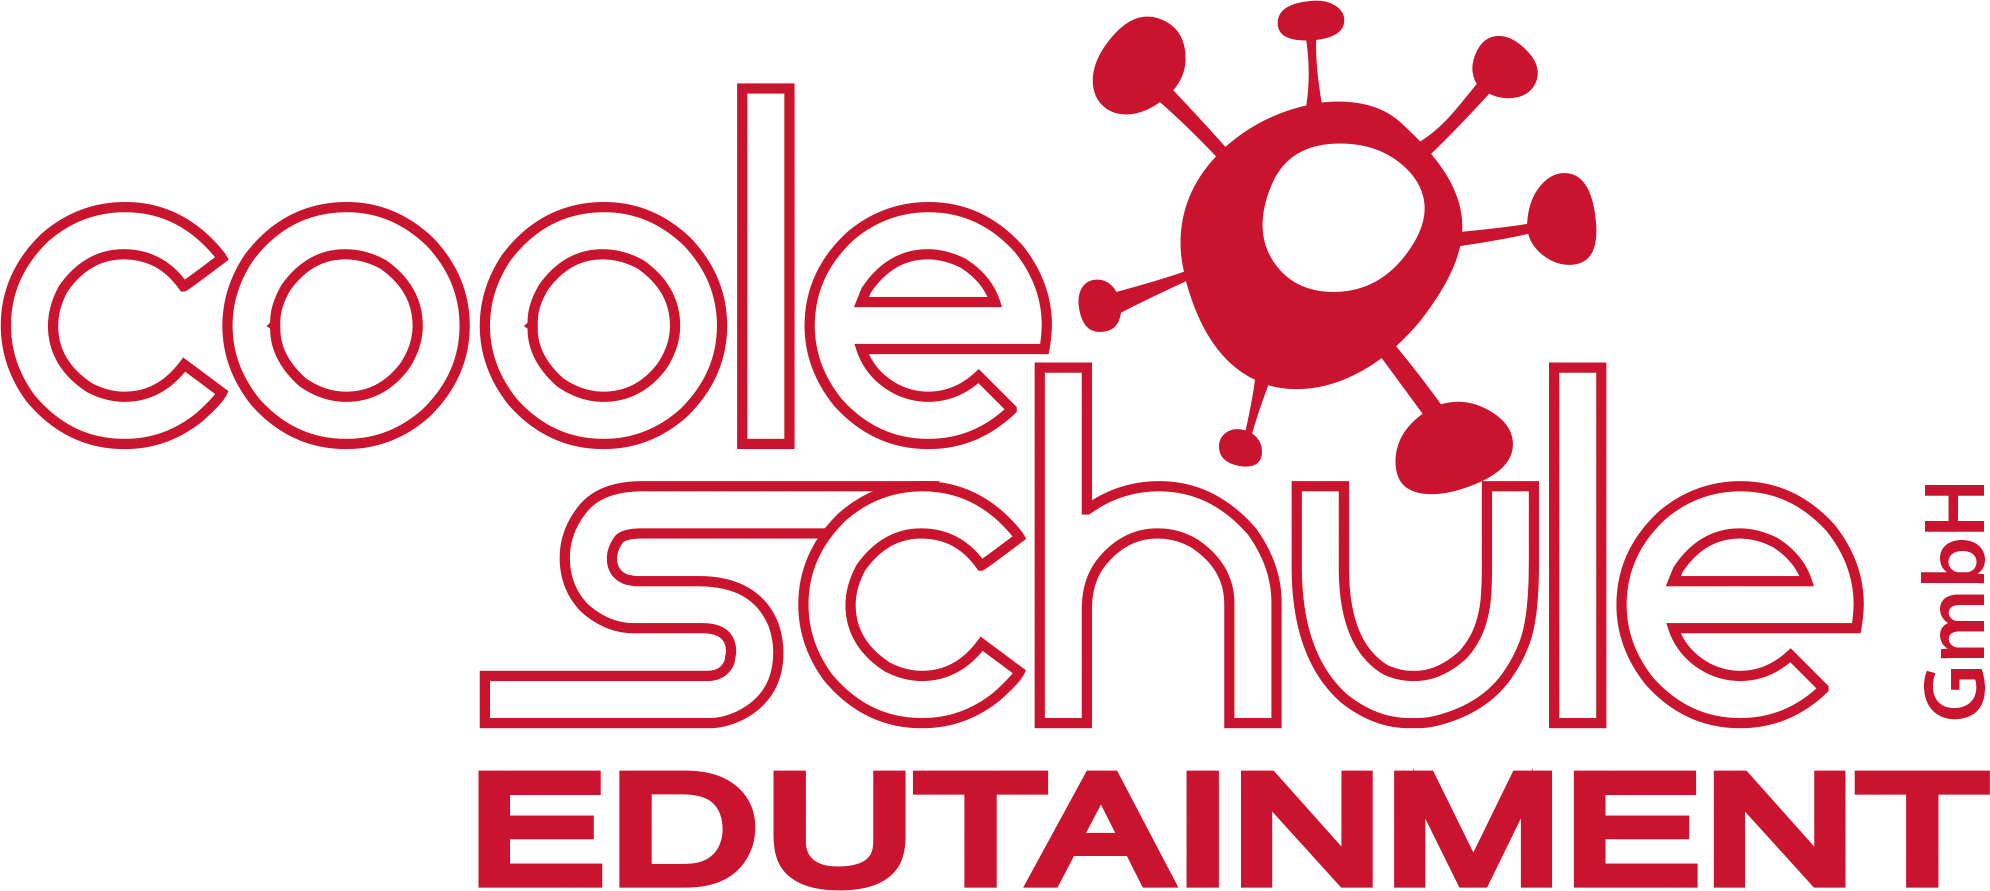 Coole Schule Edutainment GmbH